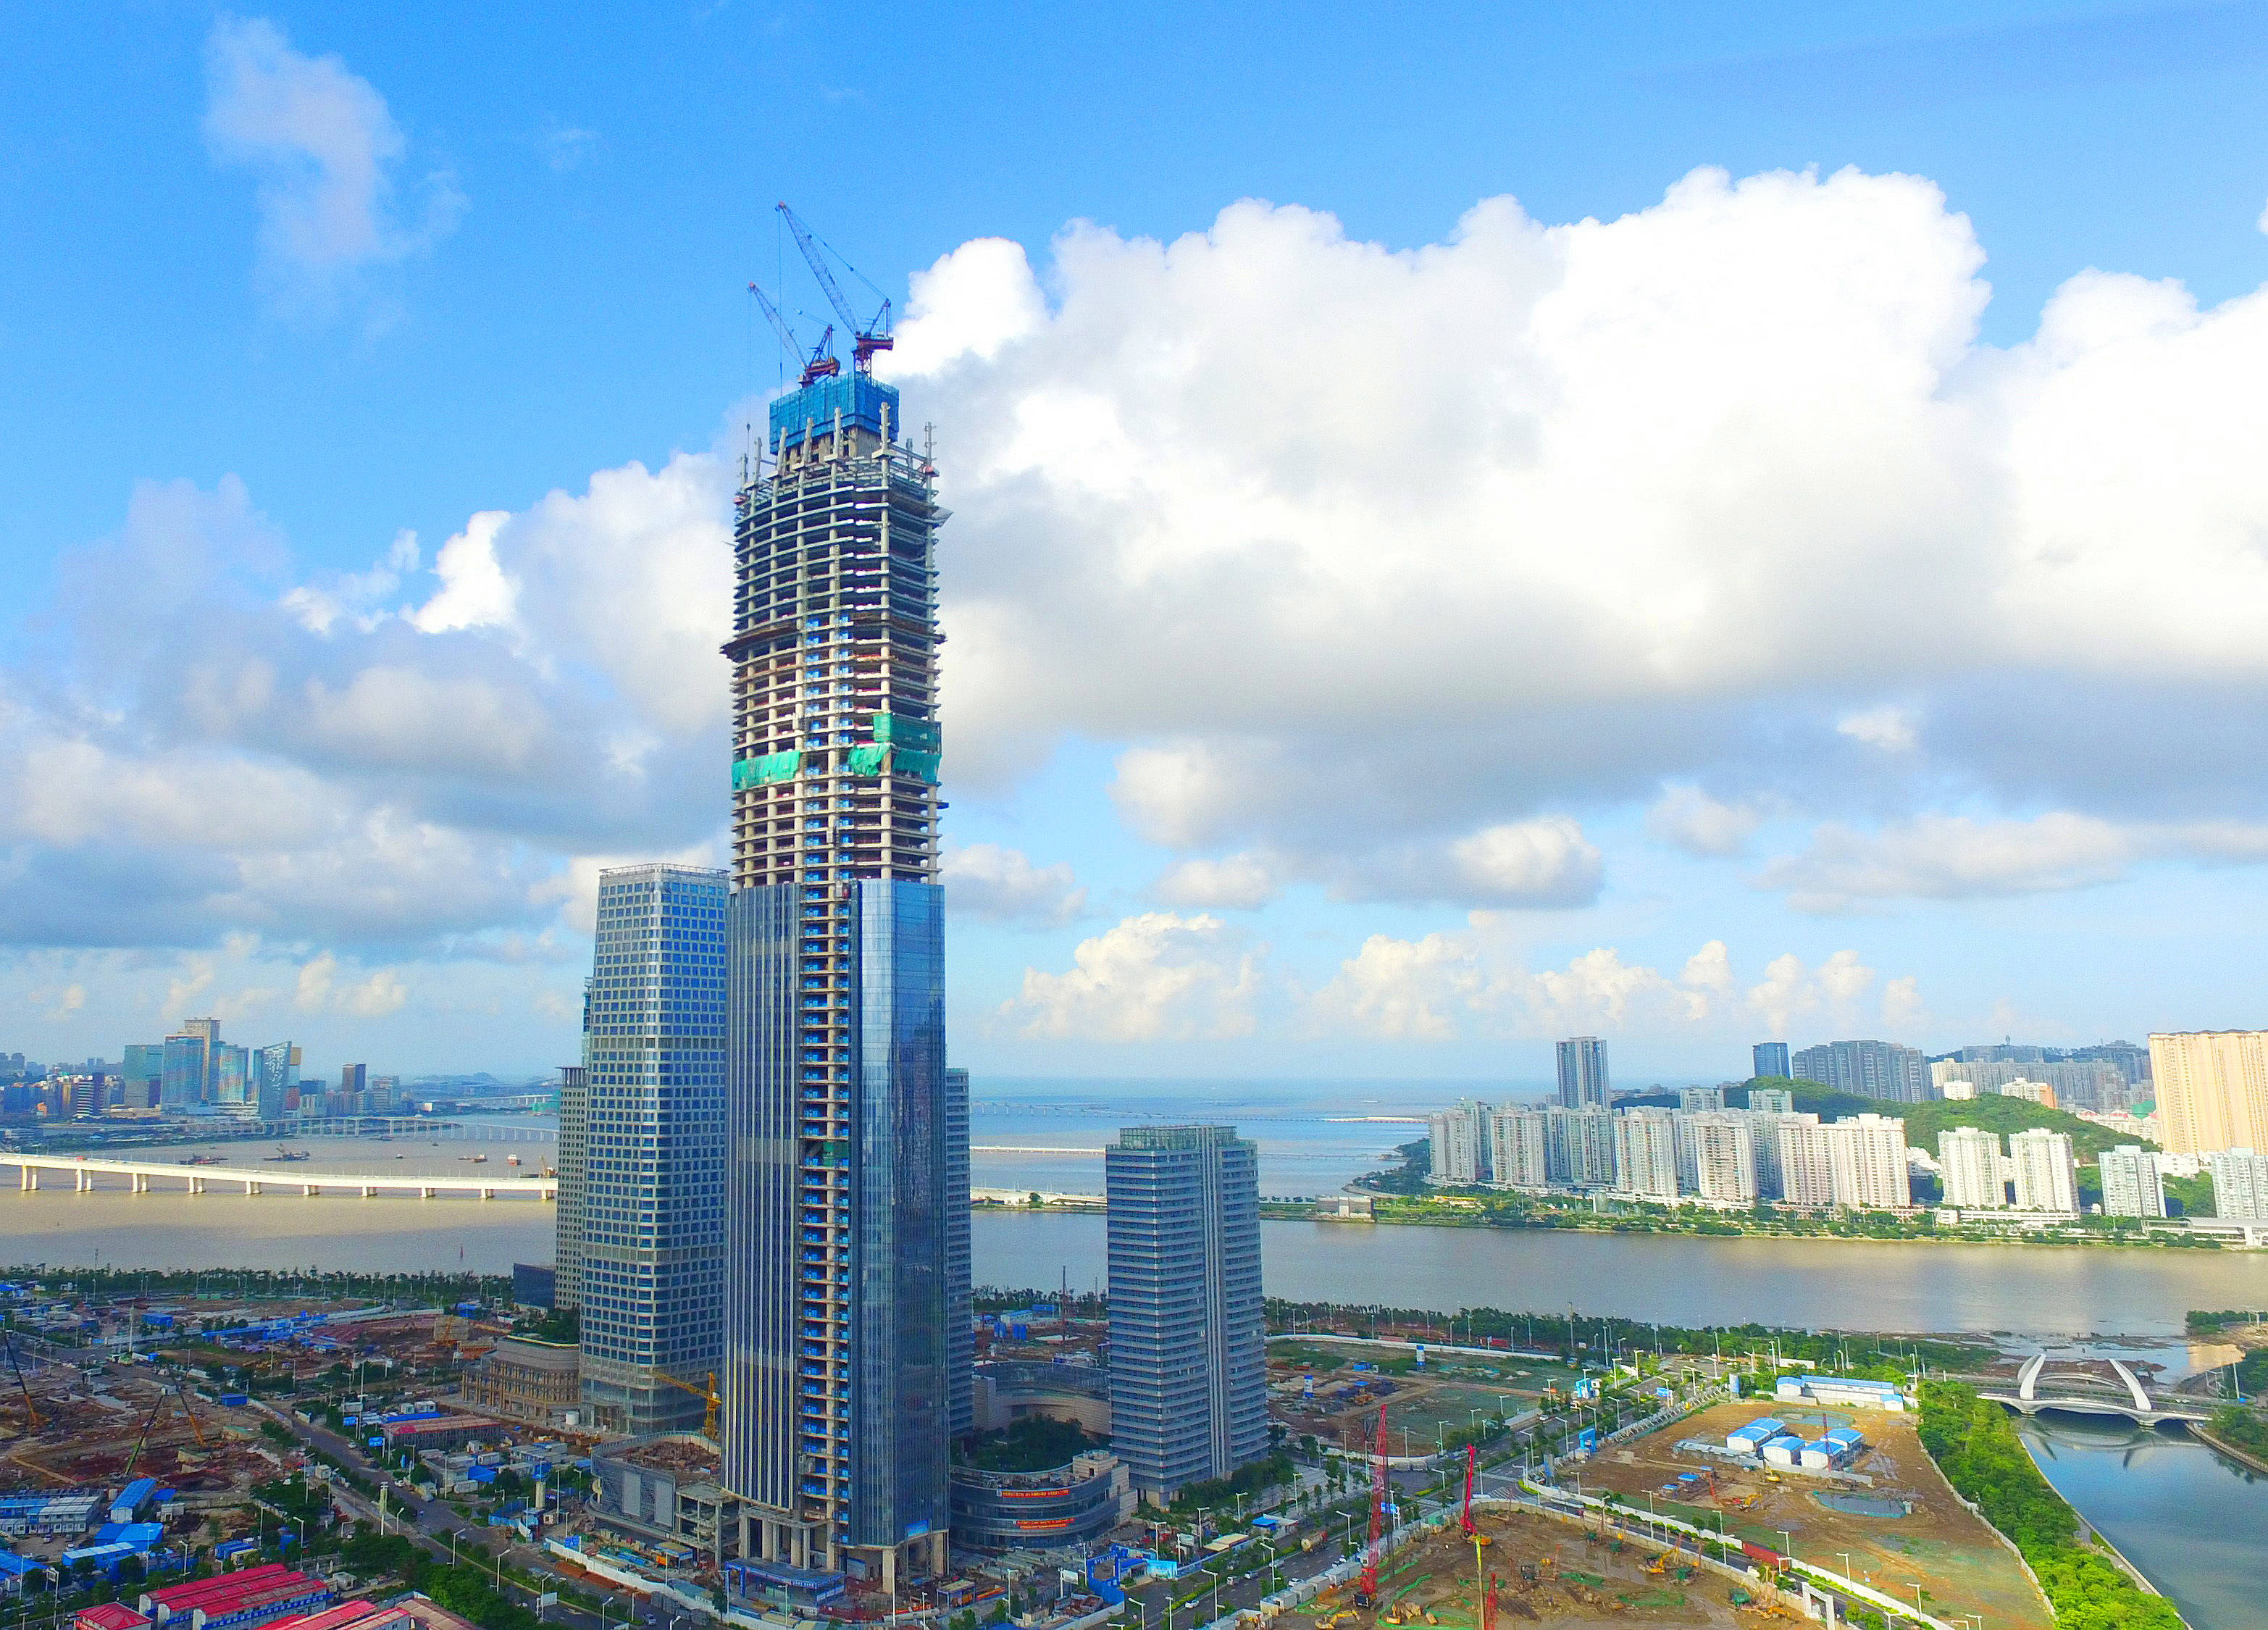 原创珠海中交汇通横琴广场项目竣工,系中交集团历史上第一高楼